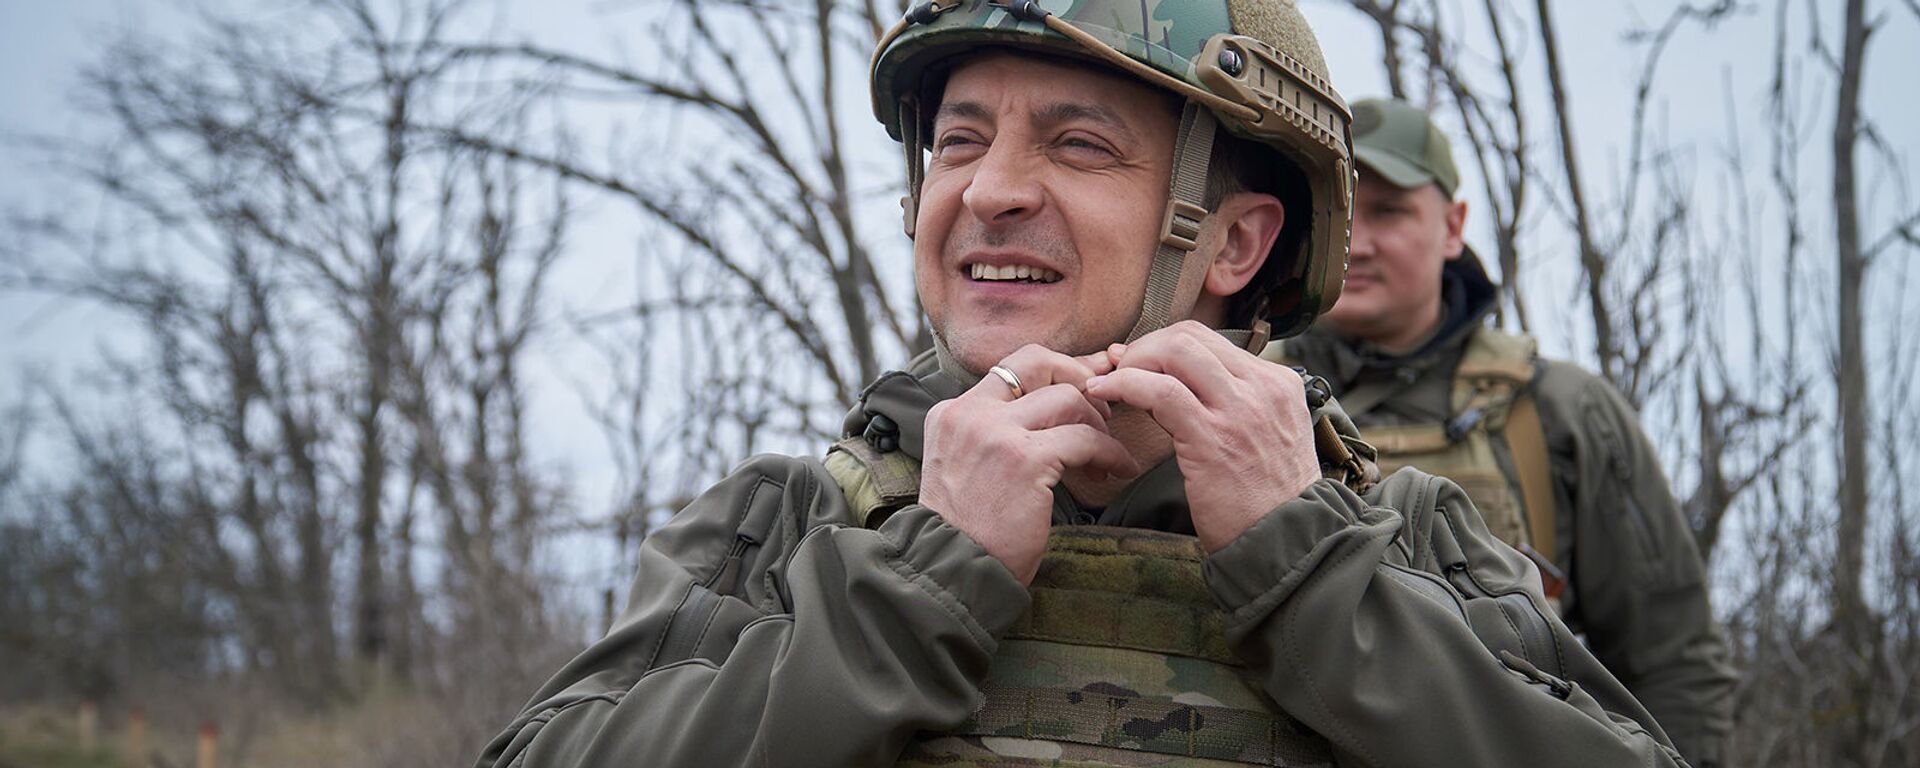 Президент Украины Владимир Зеленский посетил позиции вооруженных сил вблизи линии соприкосновения в Донбассе (9 апреля 2021). Украина - Sputnik Армения, 1920, 21.07.2021